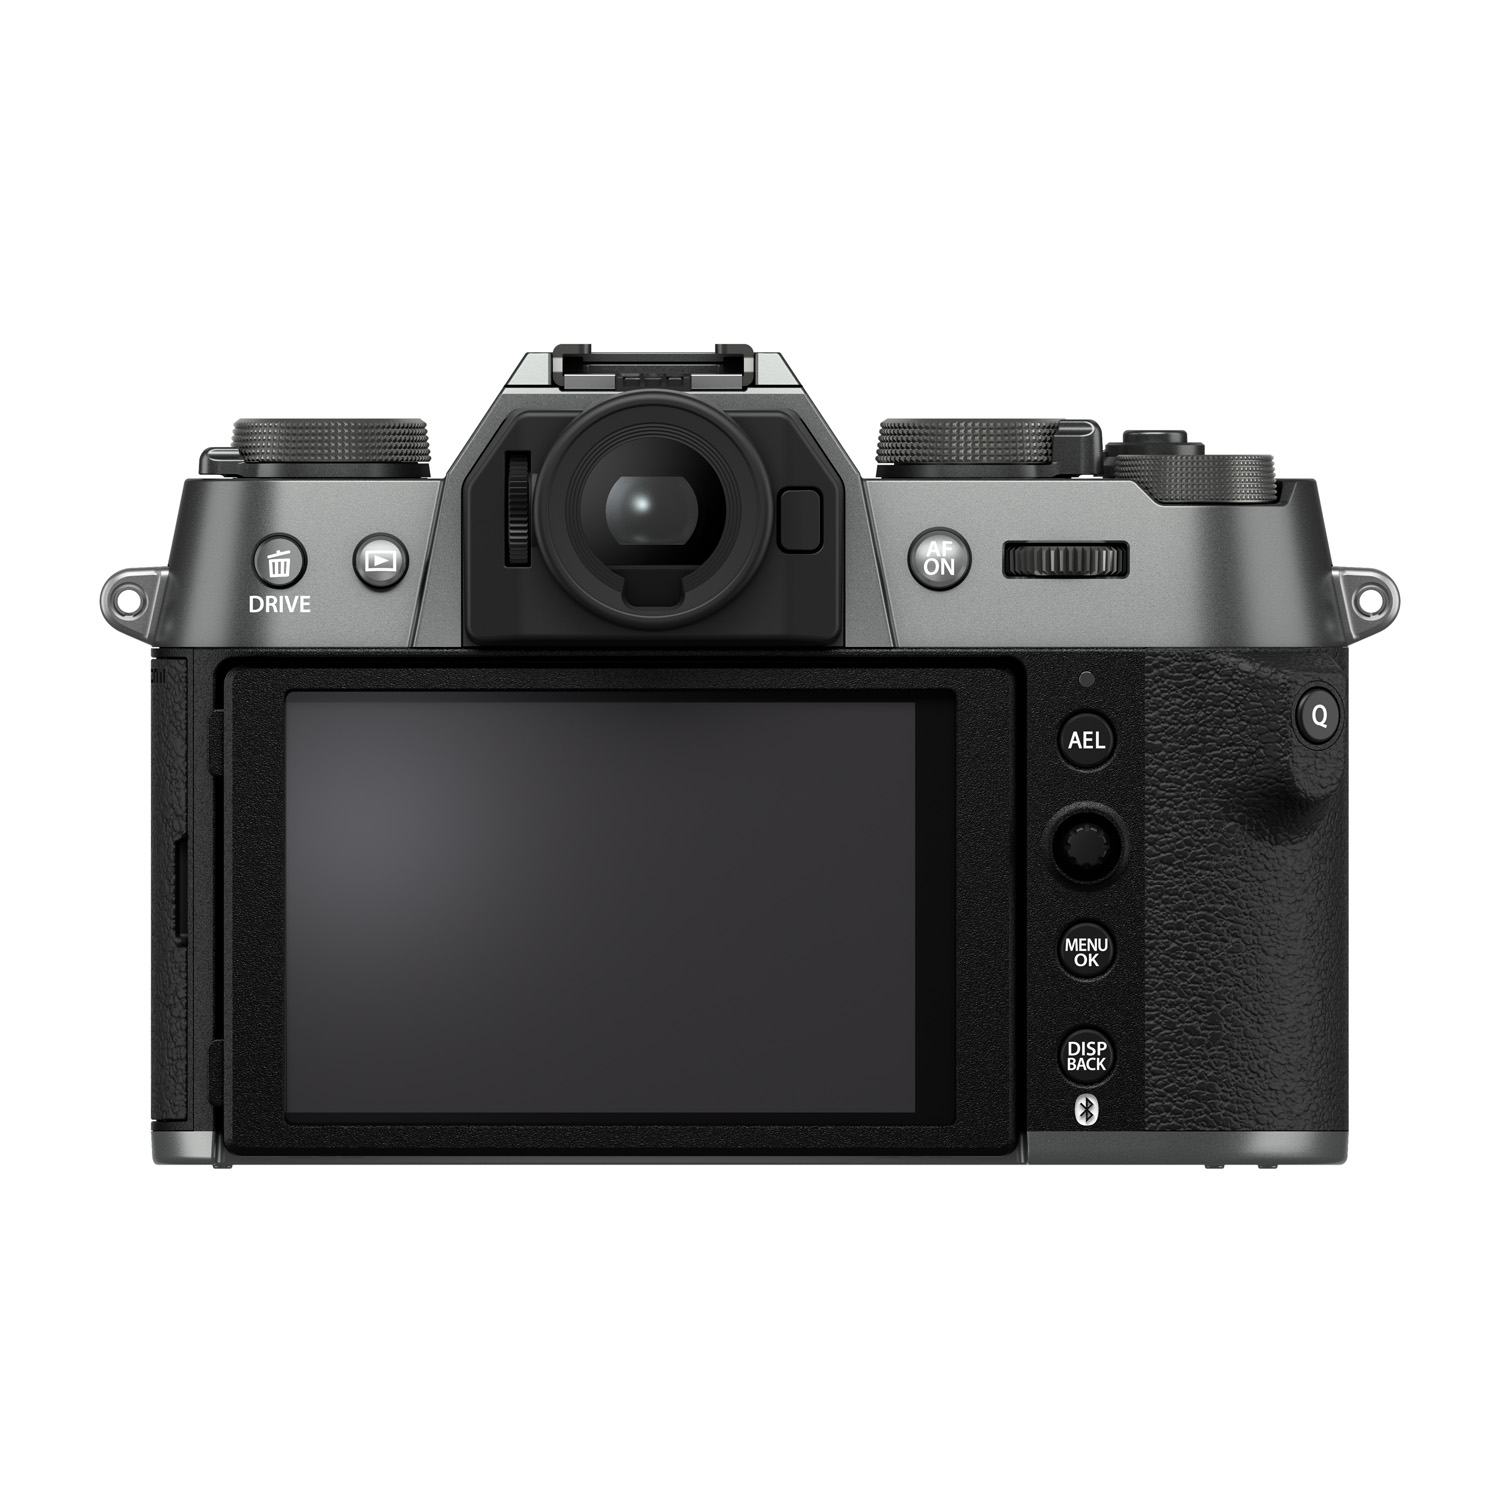 Снимок камеры Fujifilm X-T50 на белом фоне, вид сзади